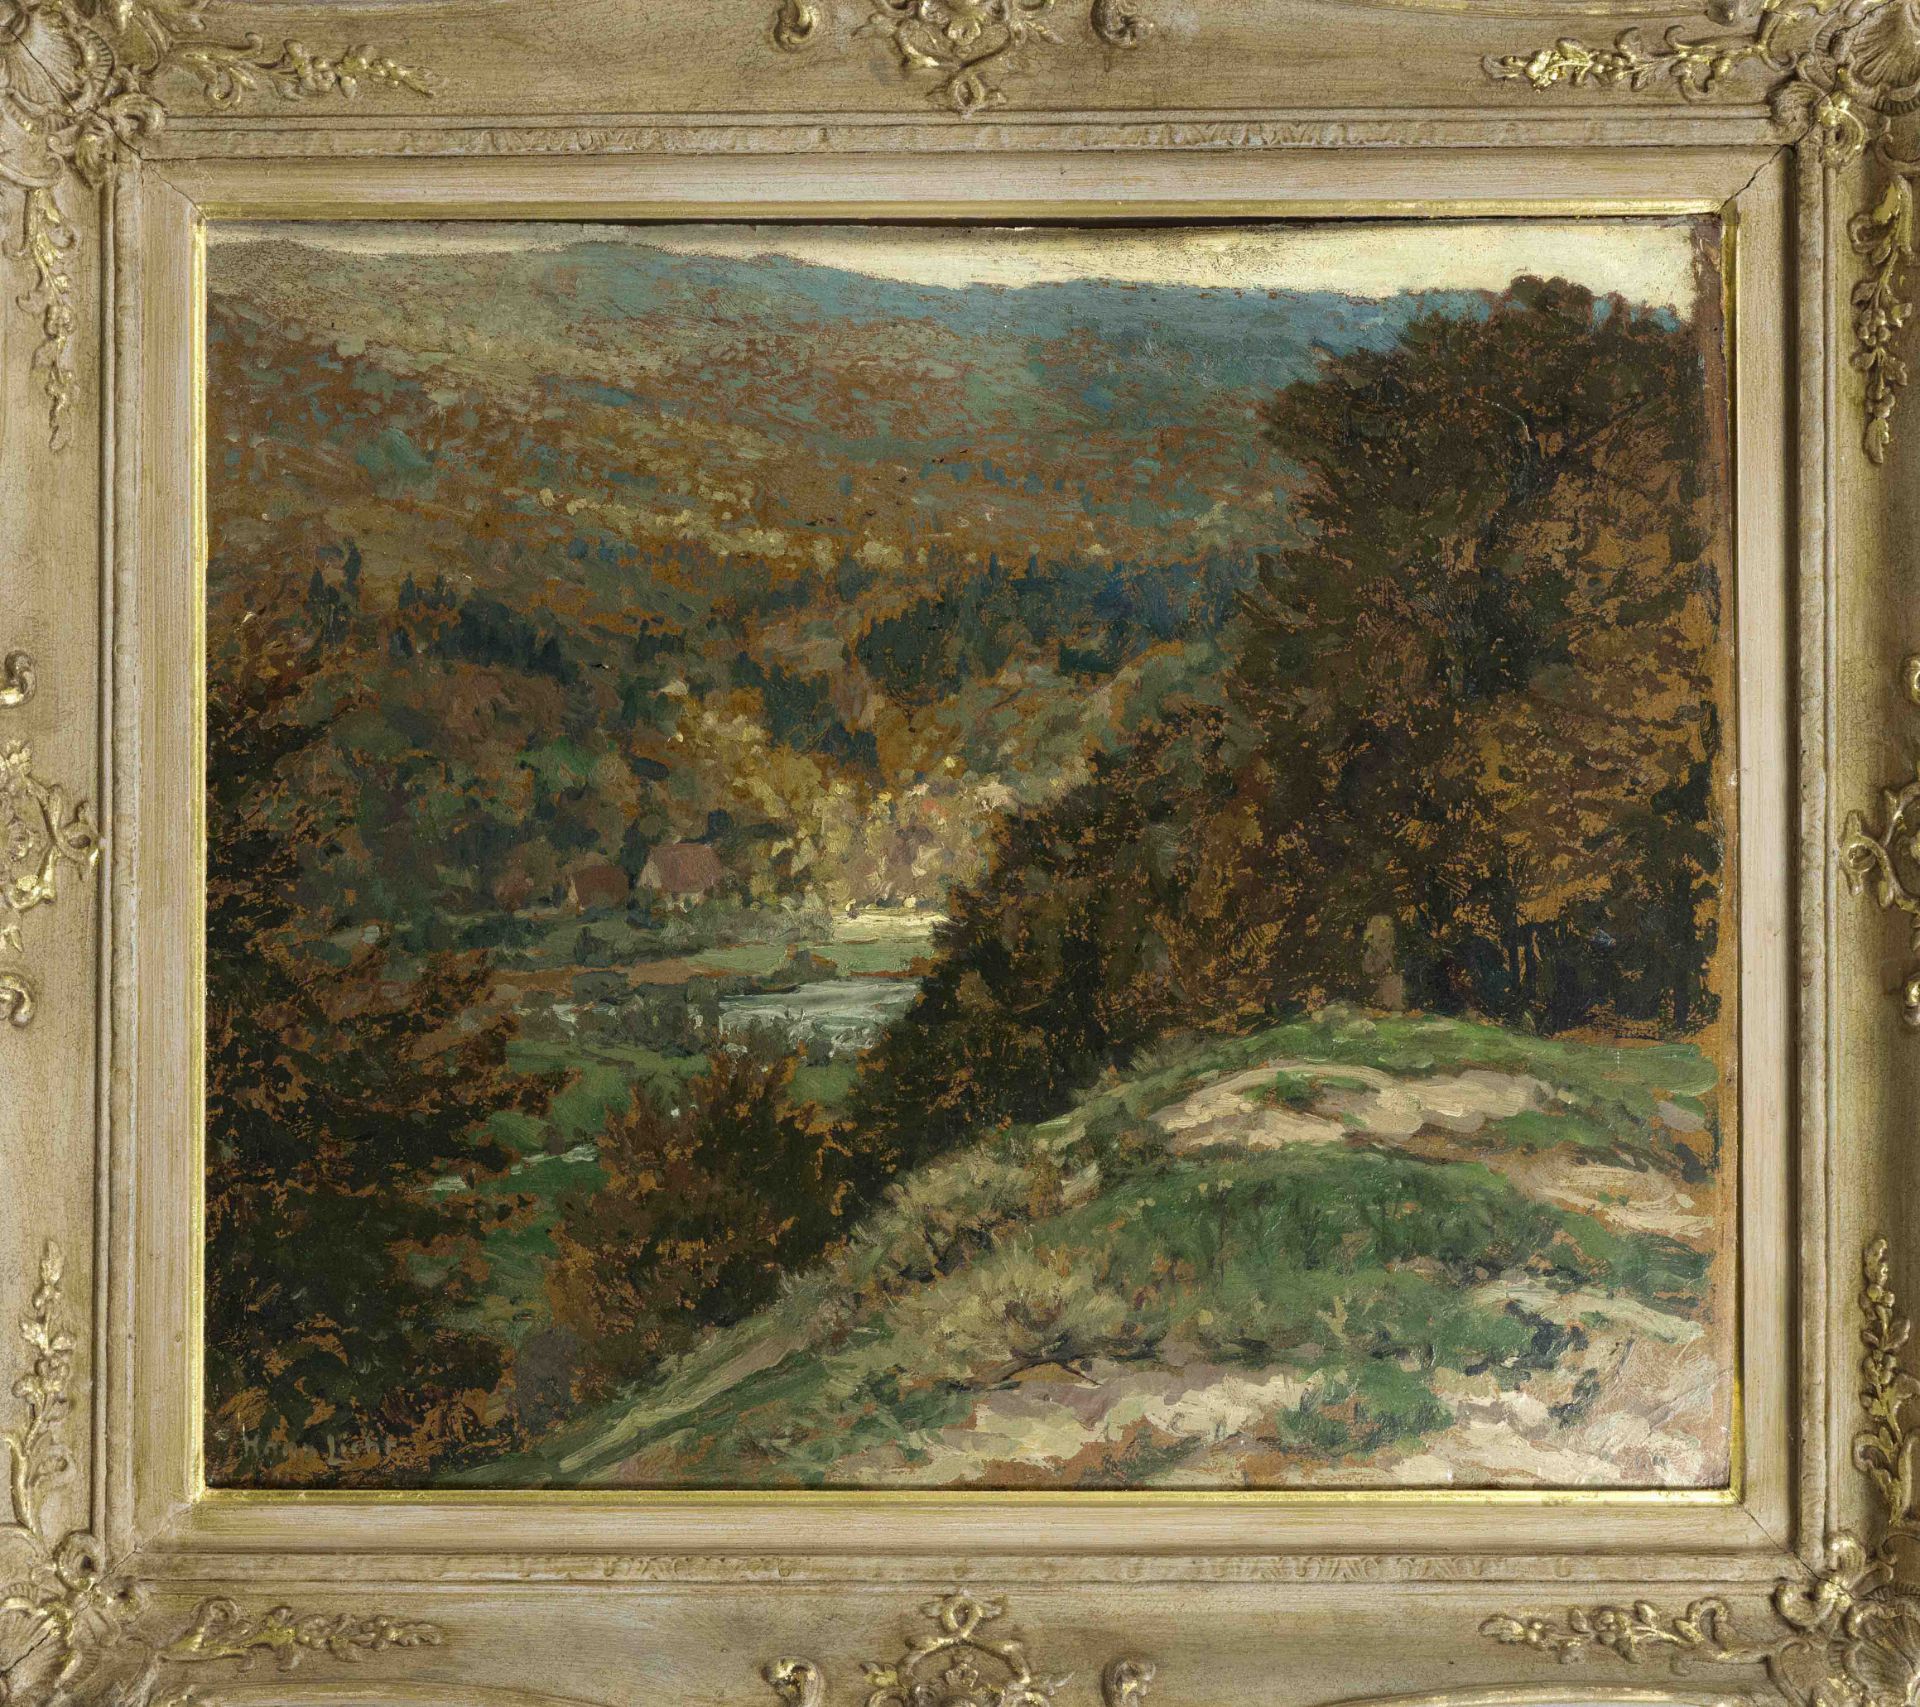 Hans Licht (1876-1935), German Impressionist landscape painter, studied in Berlin under Bracht and